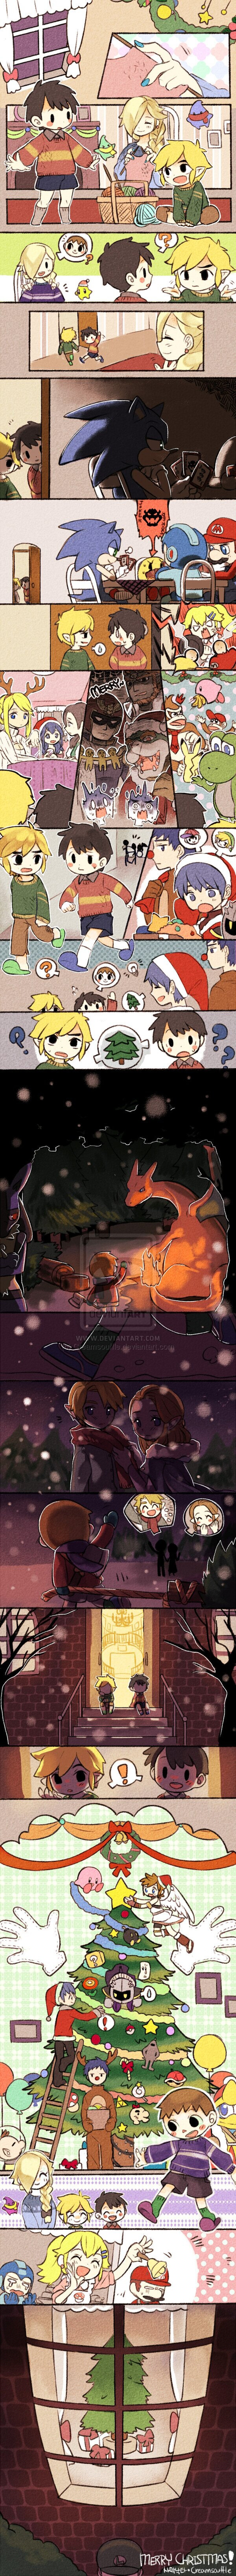 Una adorable historia de Navidad en Super Smash Bros.